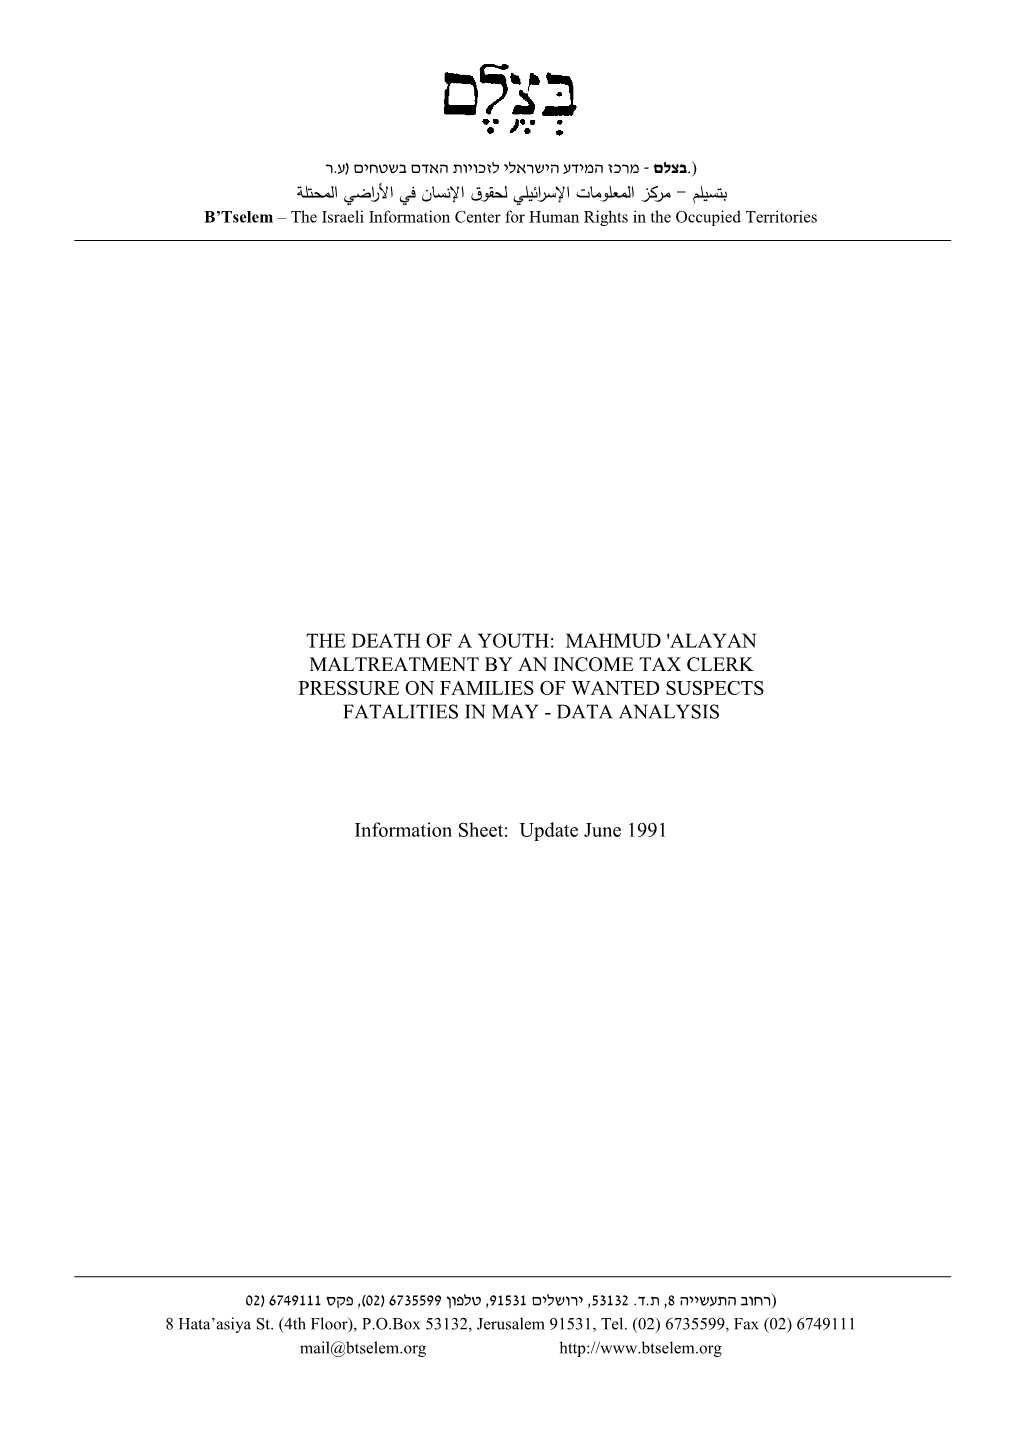 B'tselem Report: Information Sheet: Update June 1991